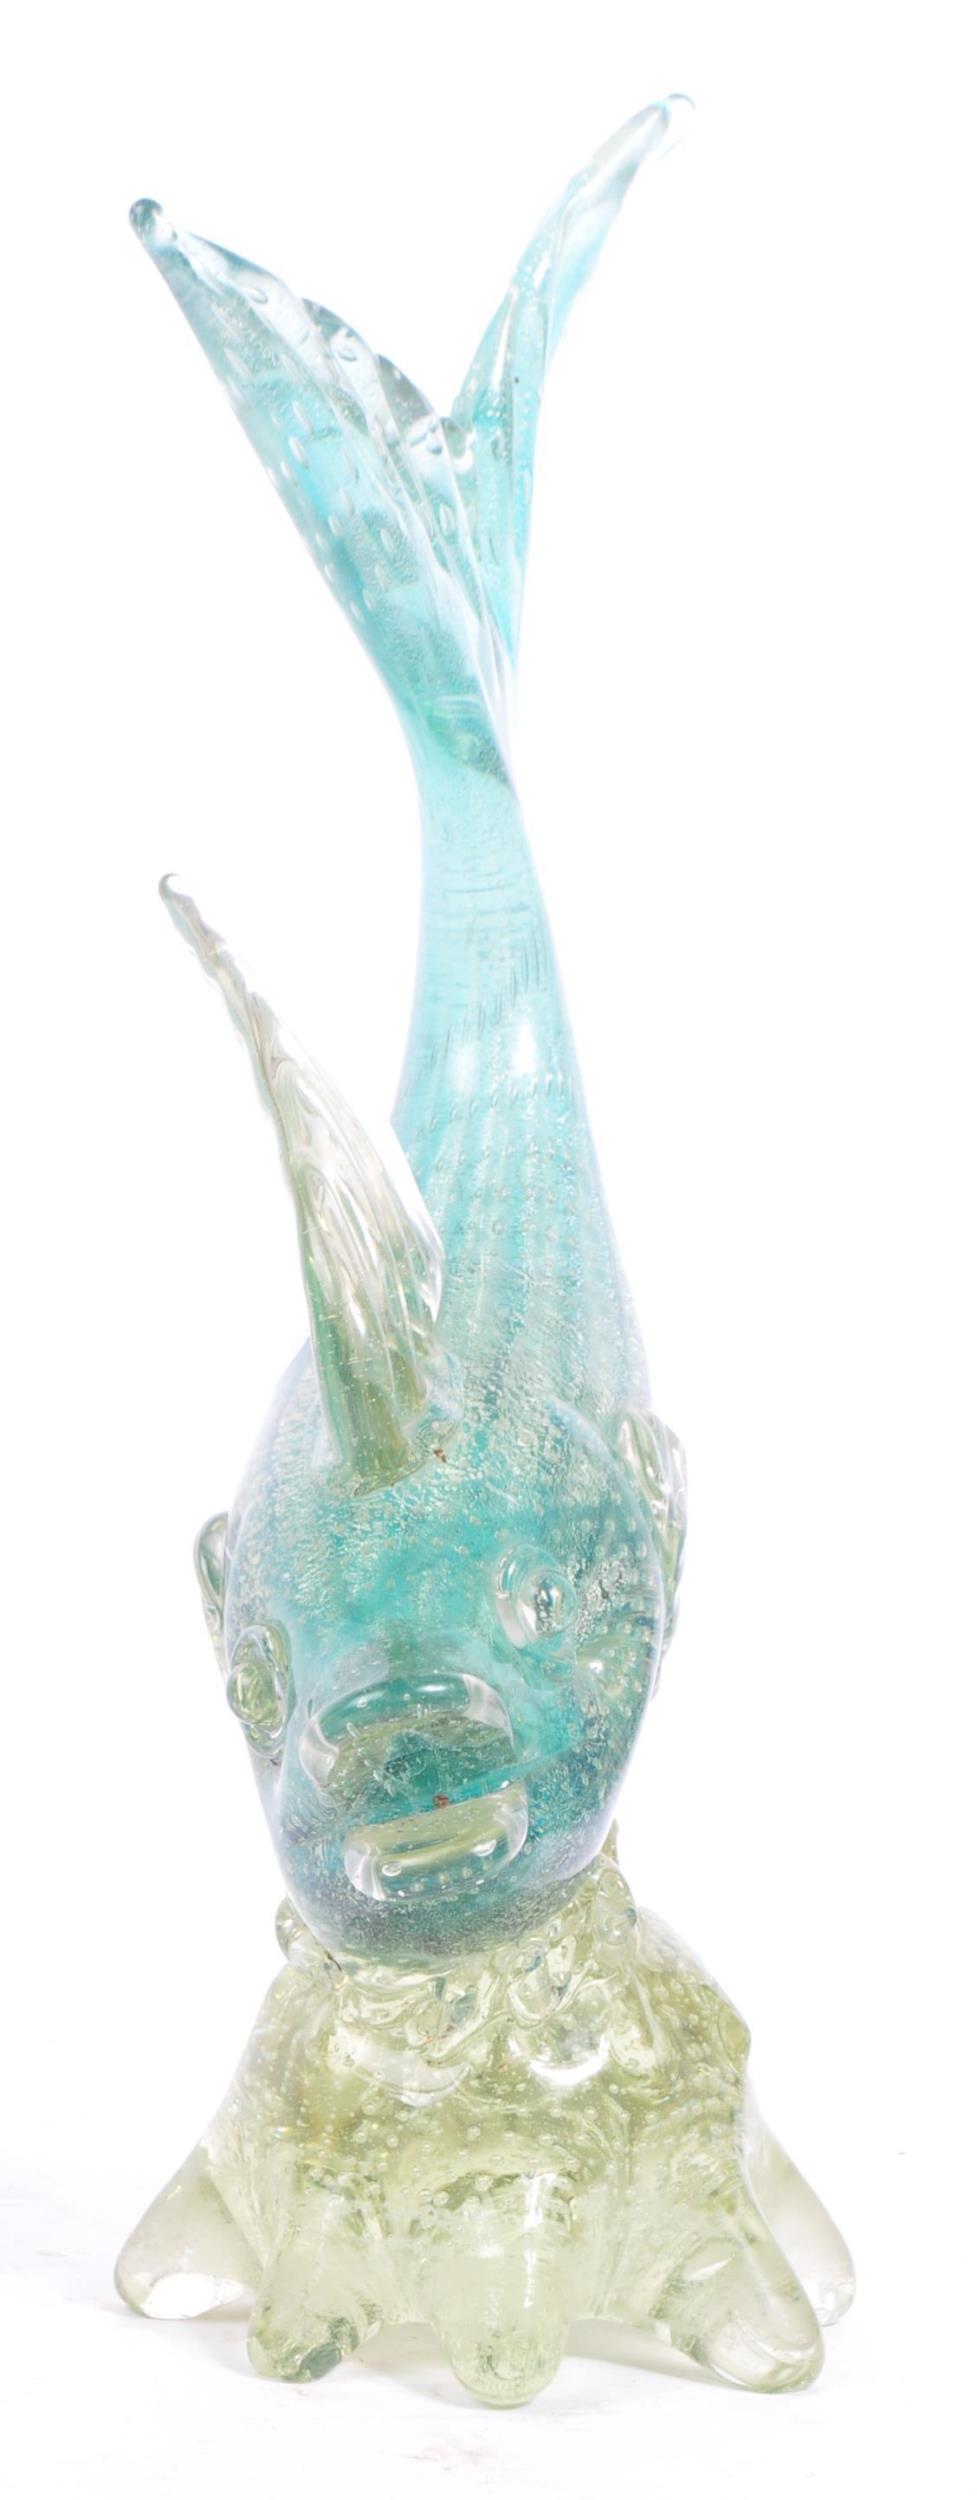 MURANO - MID 20TH CENTURY STUDIO GLASS FISH - Image 2 of 8